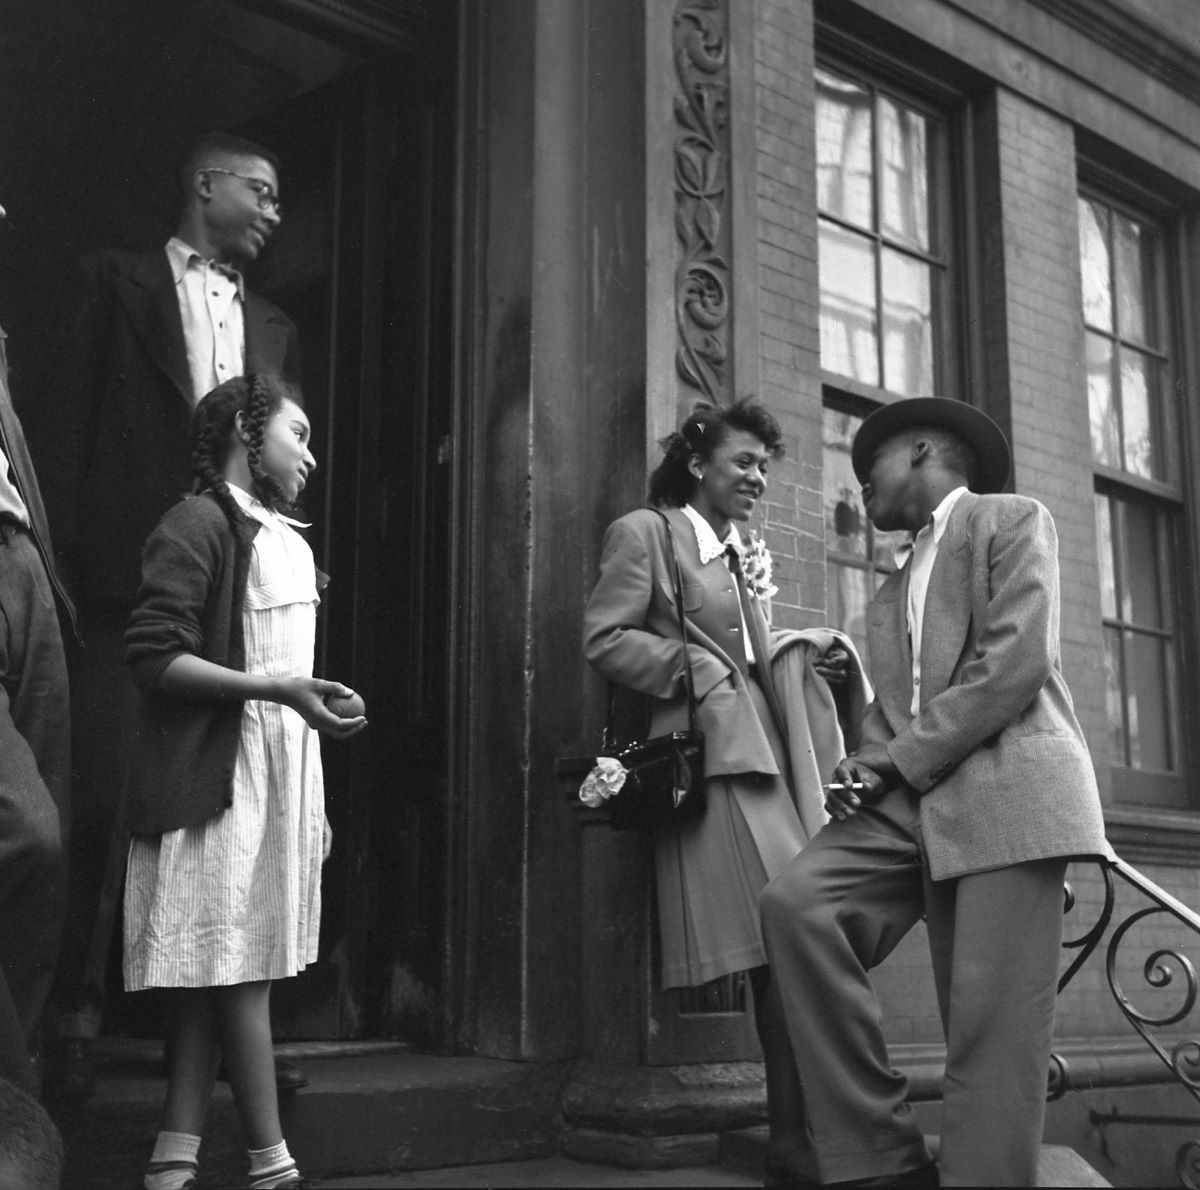 Harlem Love, New York City, c. 1946-1950